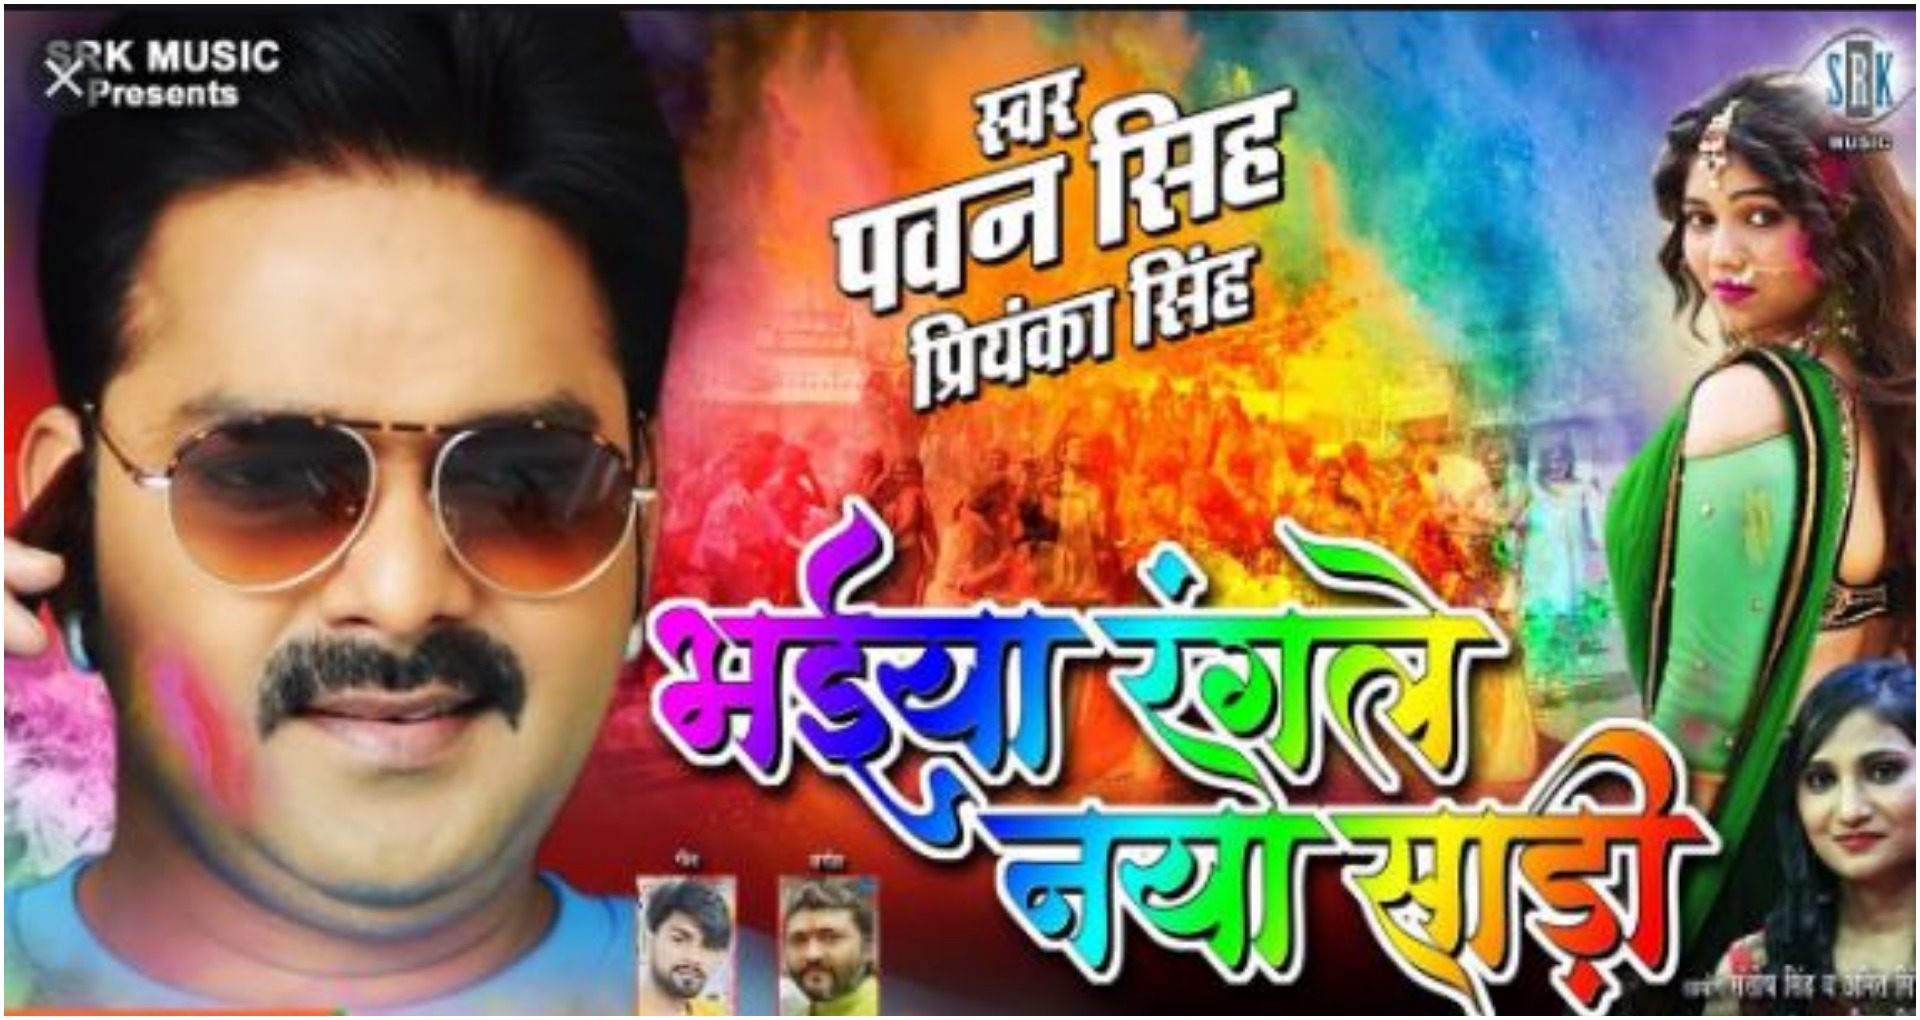 Bhojpuri Holi Song 2020: पवन सिंह के ‘भईया रंगले नया साड़ी’ होली गाने ने यूट्यूब पर मचाया धमाल, देखें वीडियो